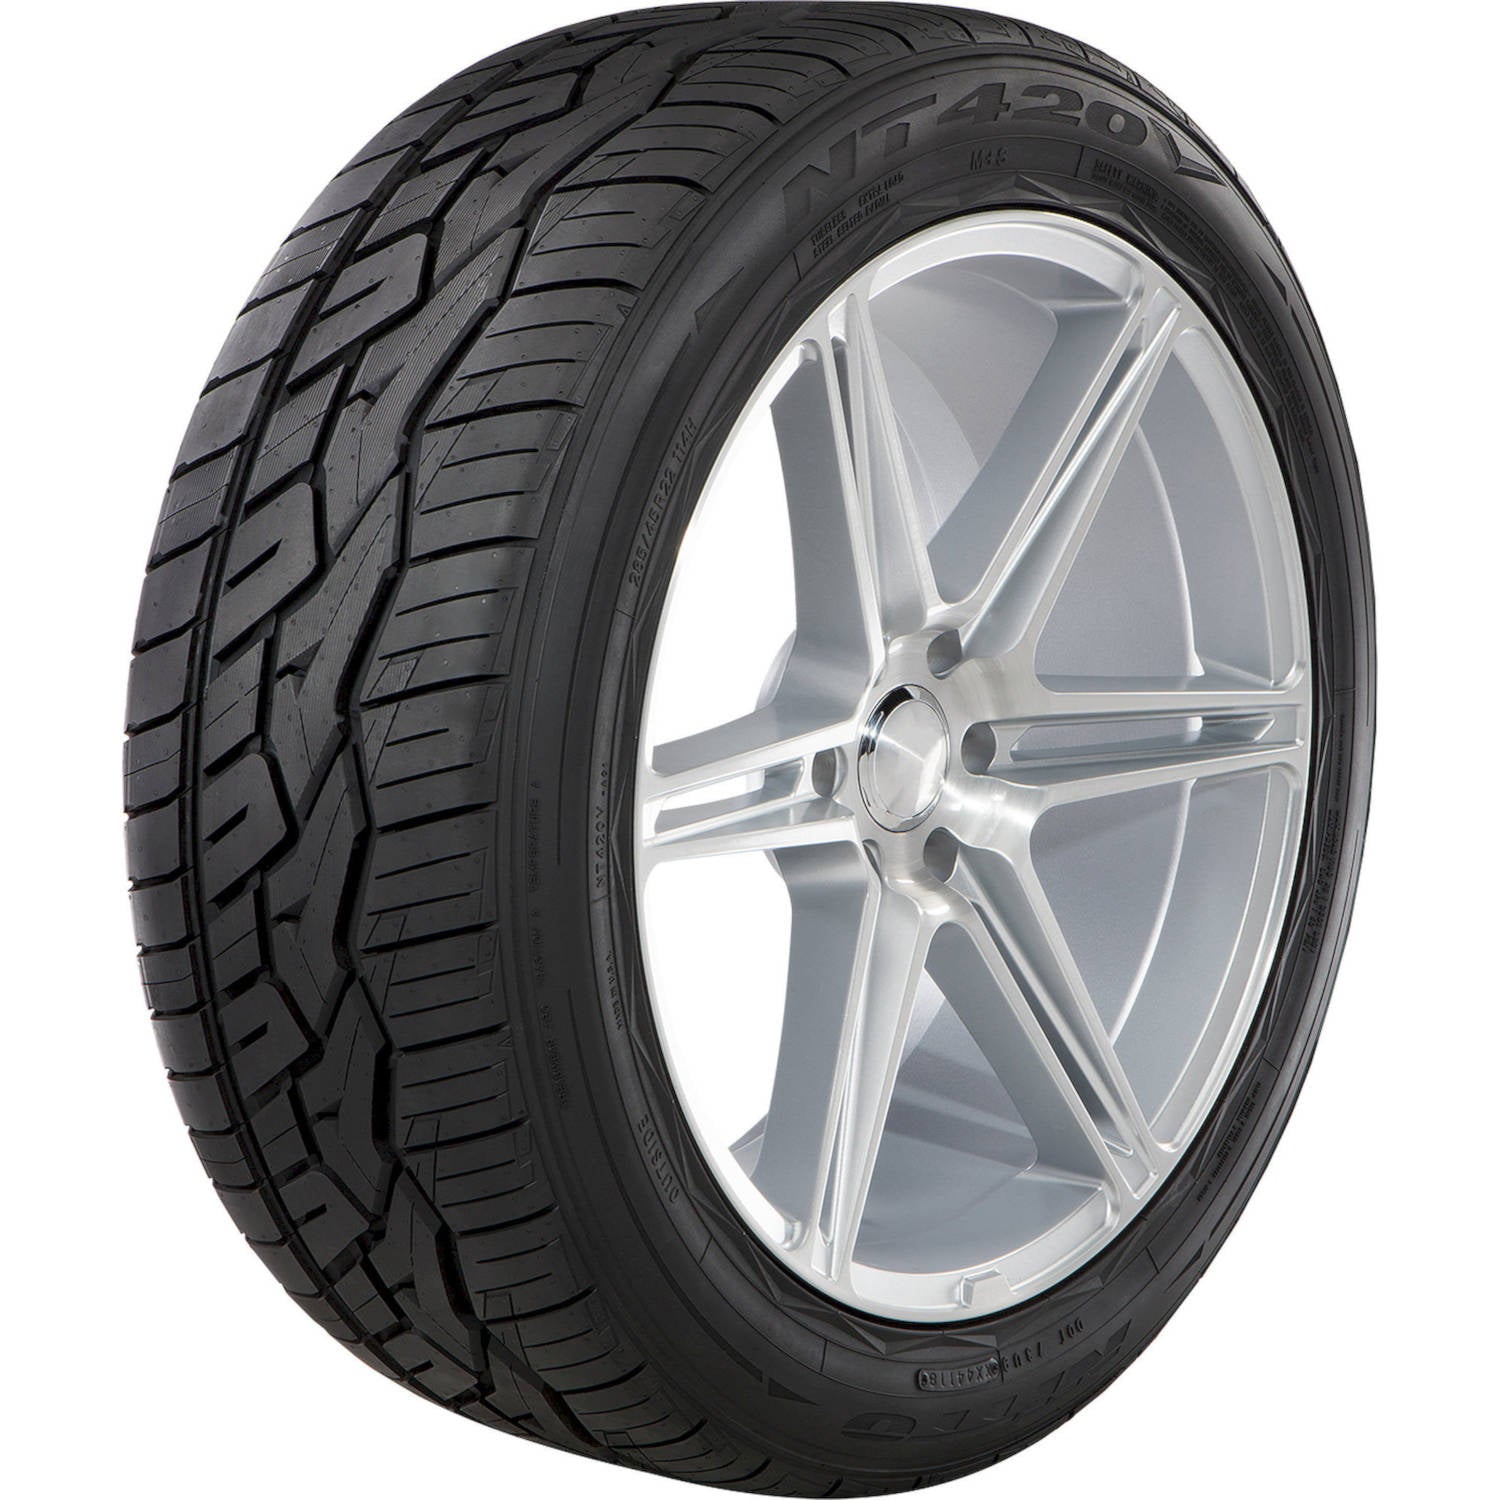 NITTO NT420V 285/35R24XL (31.9X11.2R 24) Tires